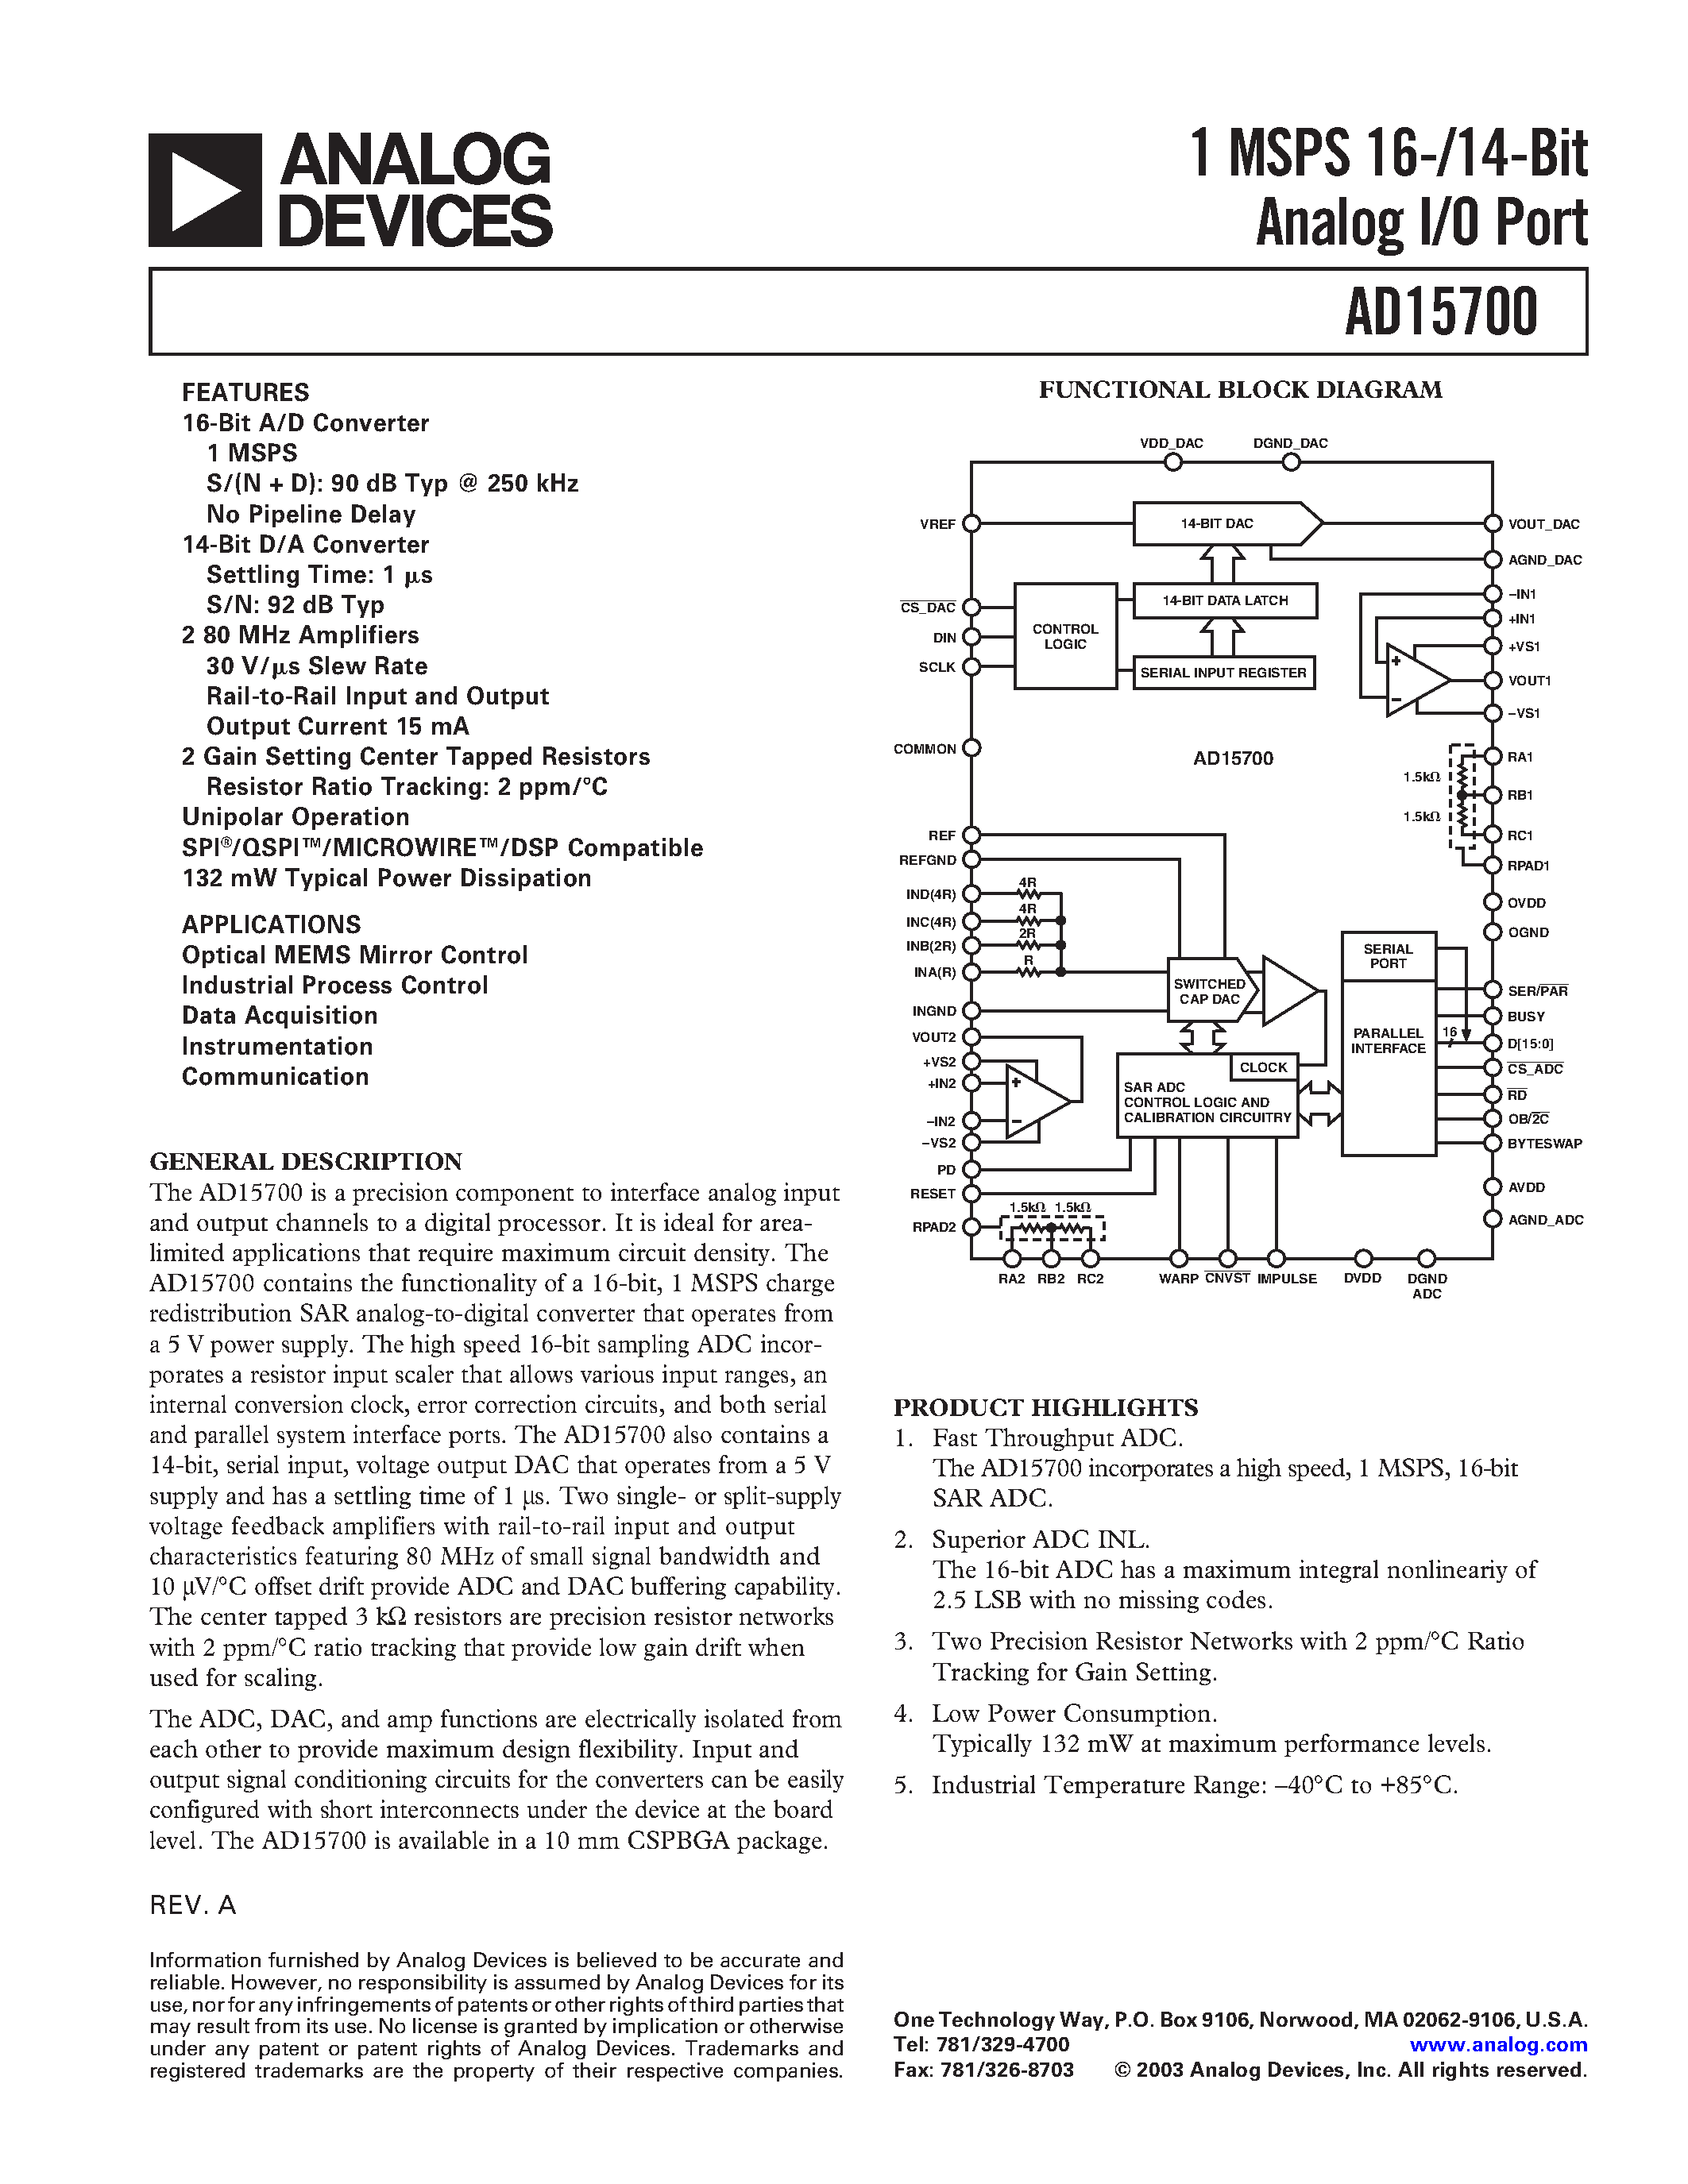 Даташит AD15700BCA - 1 MSPS 16-/14-Bit Analog I/O Port страница 1